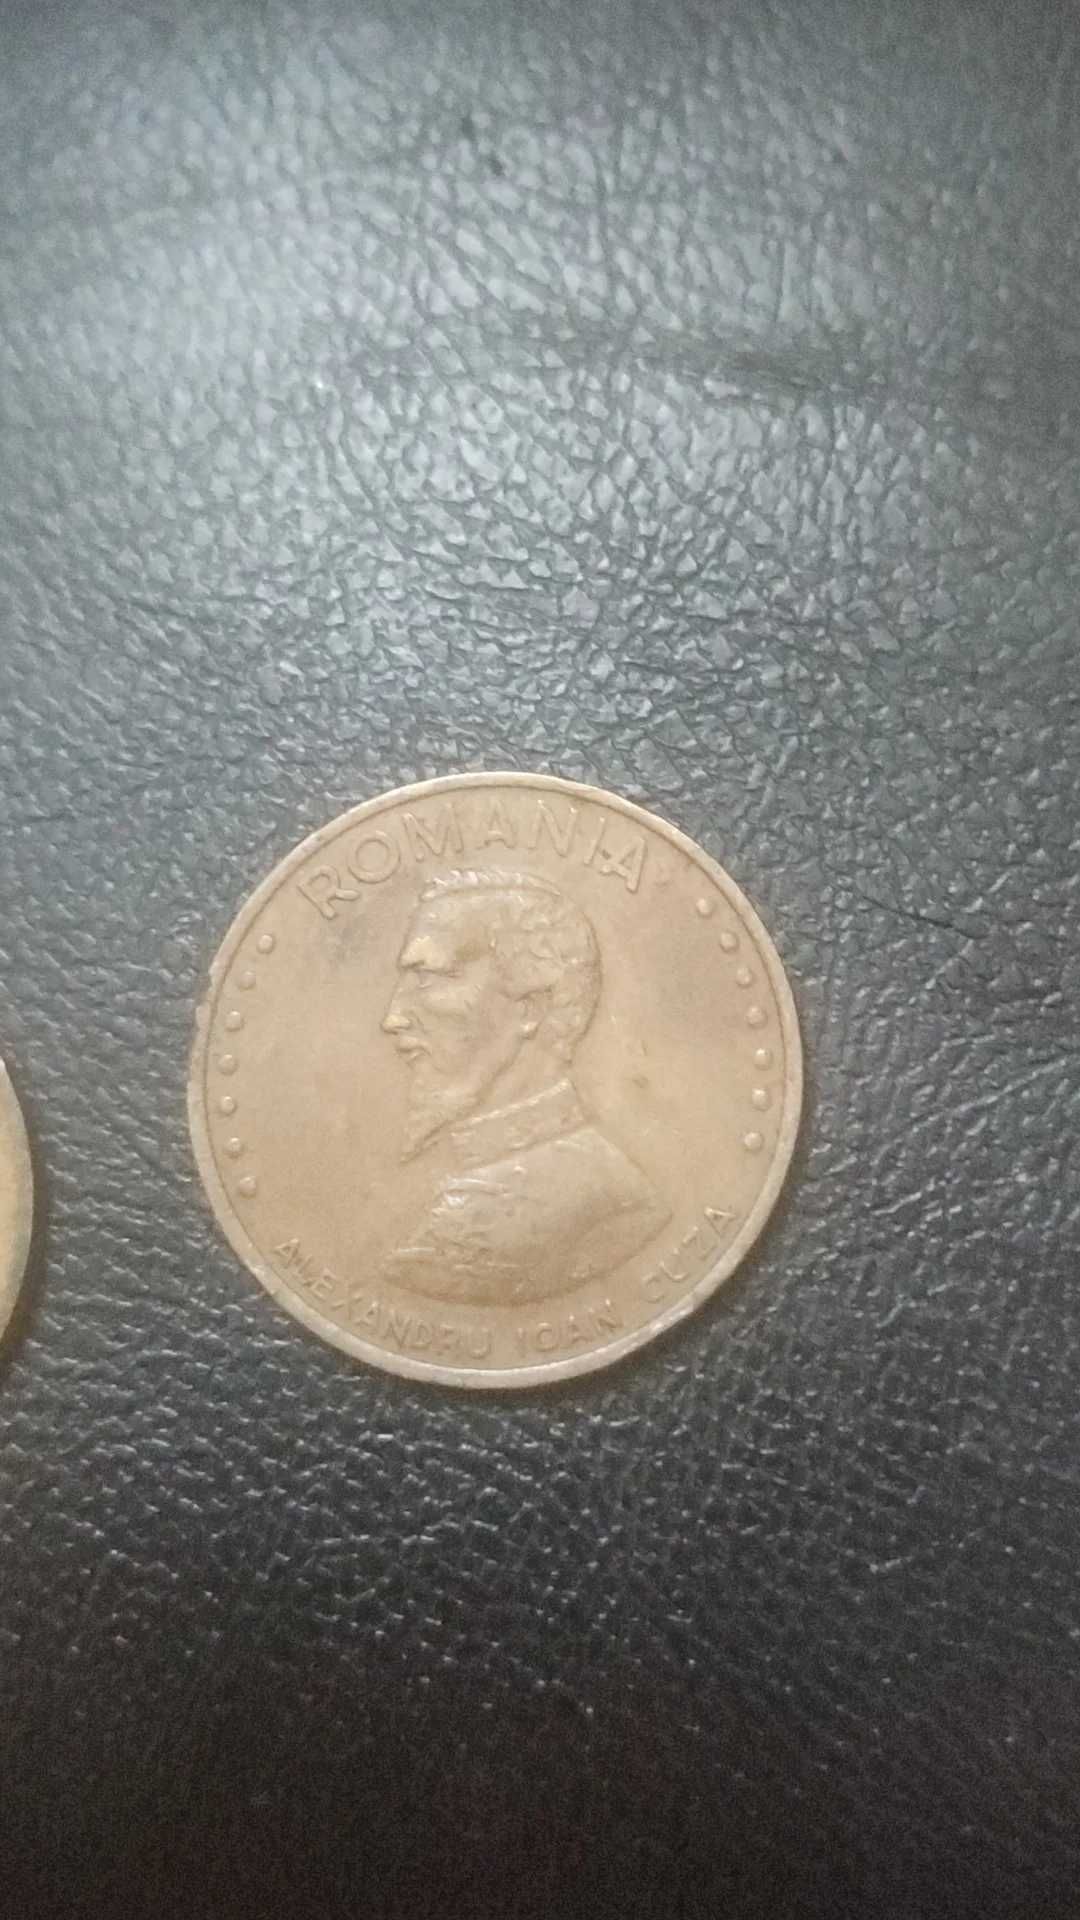 monede vechi de vanzare